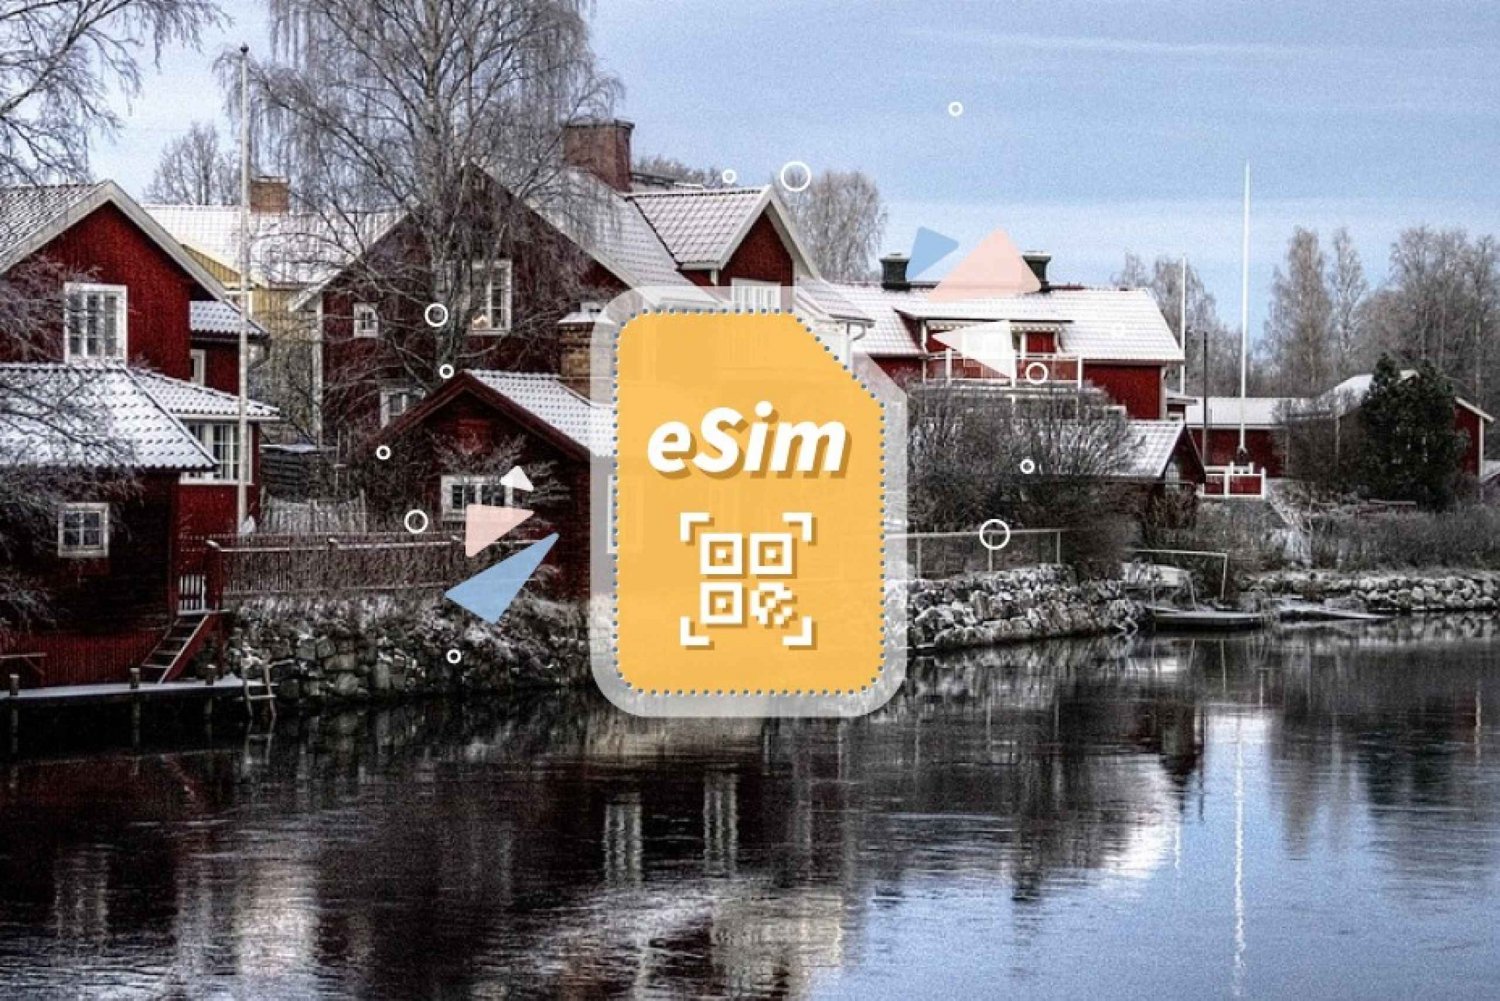 Suécia/Europa: plano de dados móveis eSim